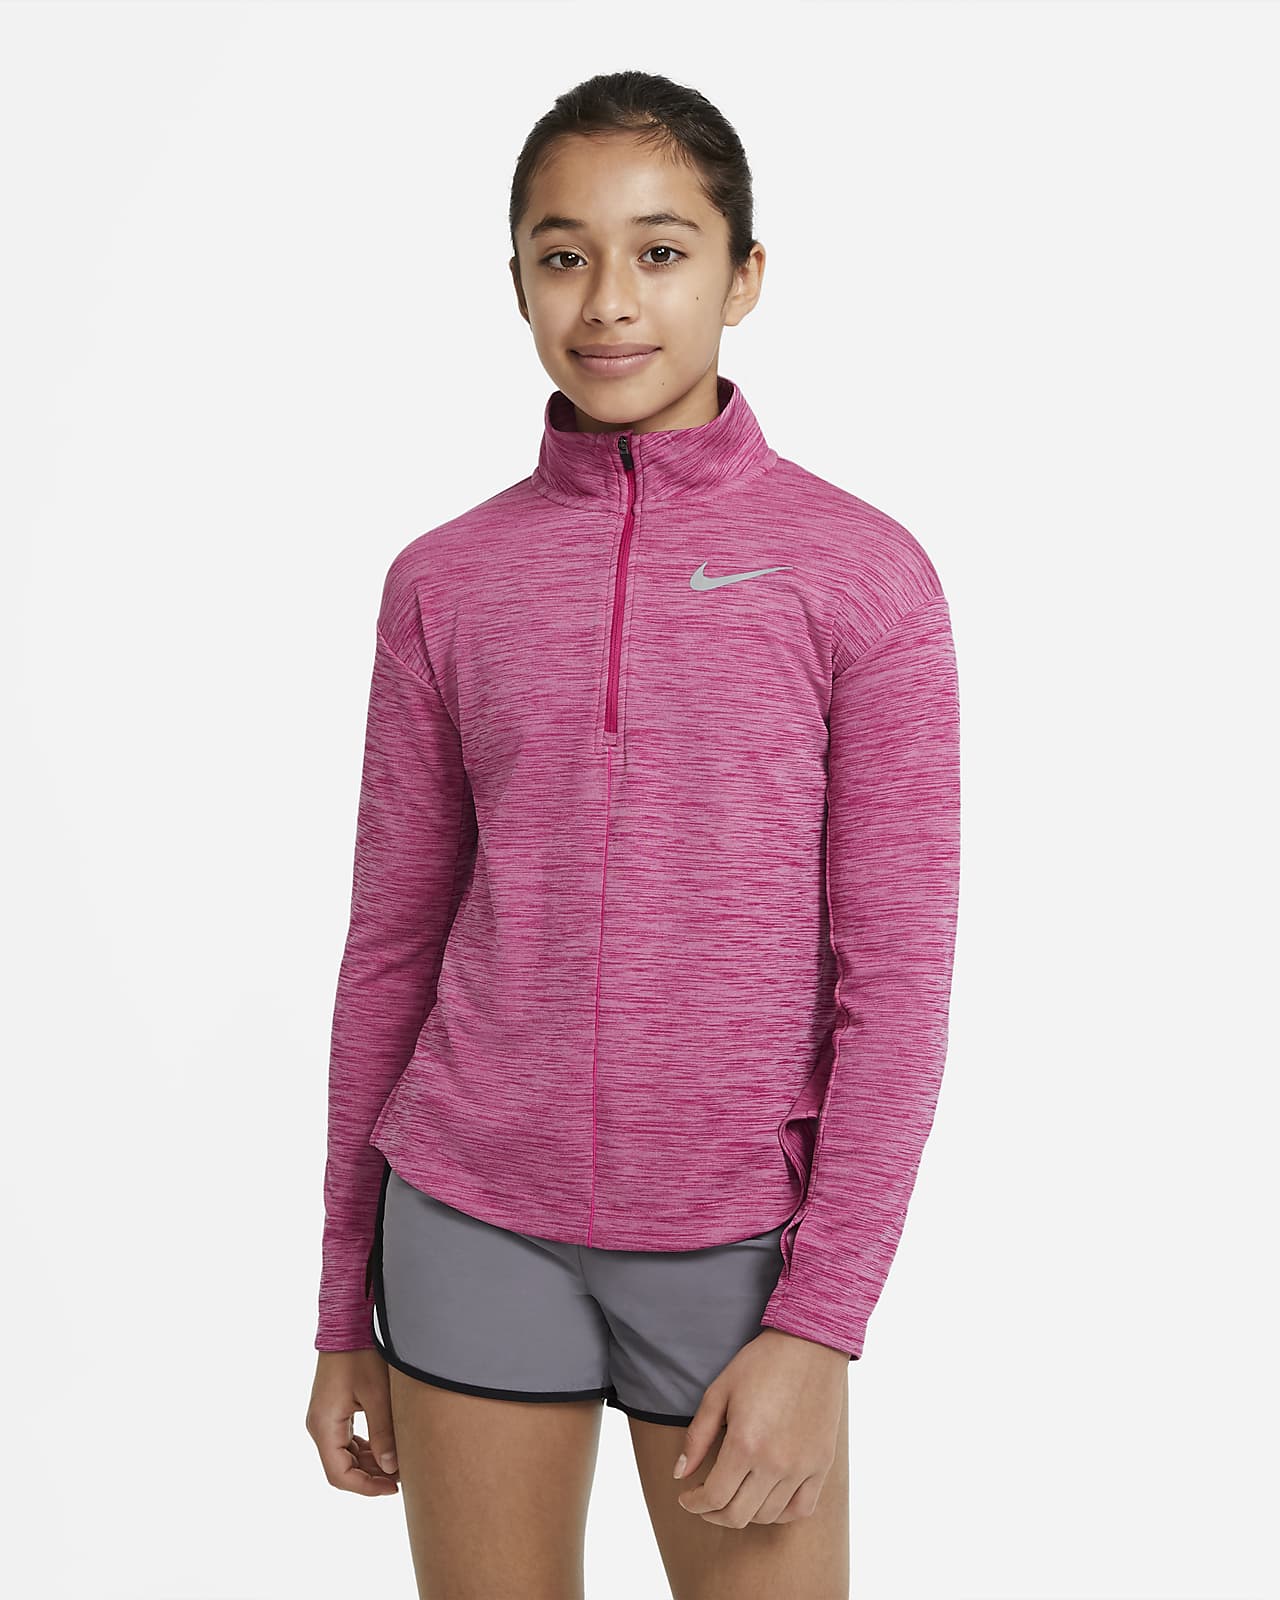 Zip Long-Sleeve Running Top. Nike LU